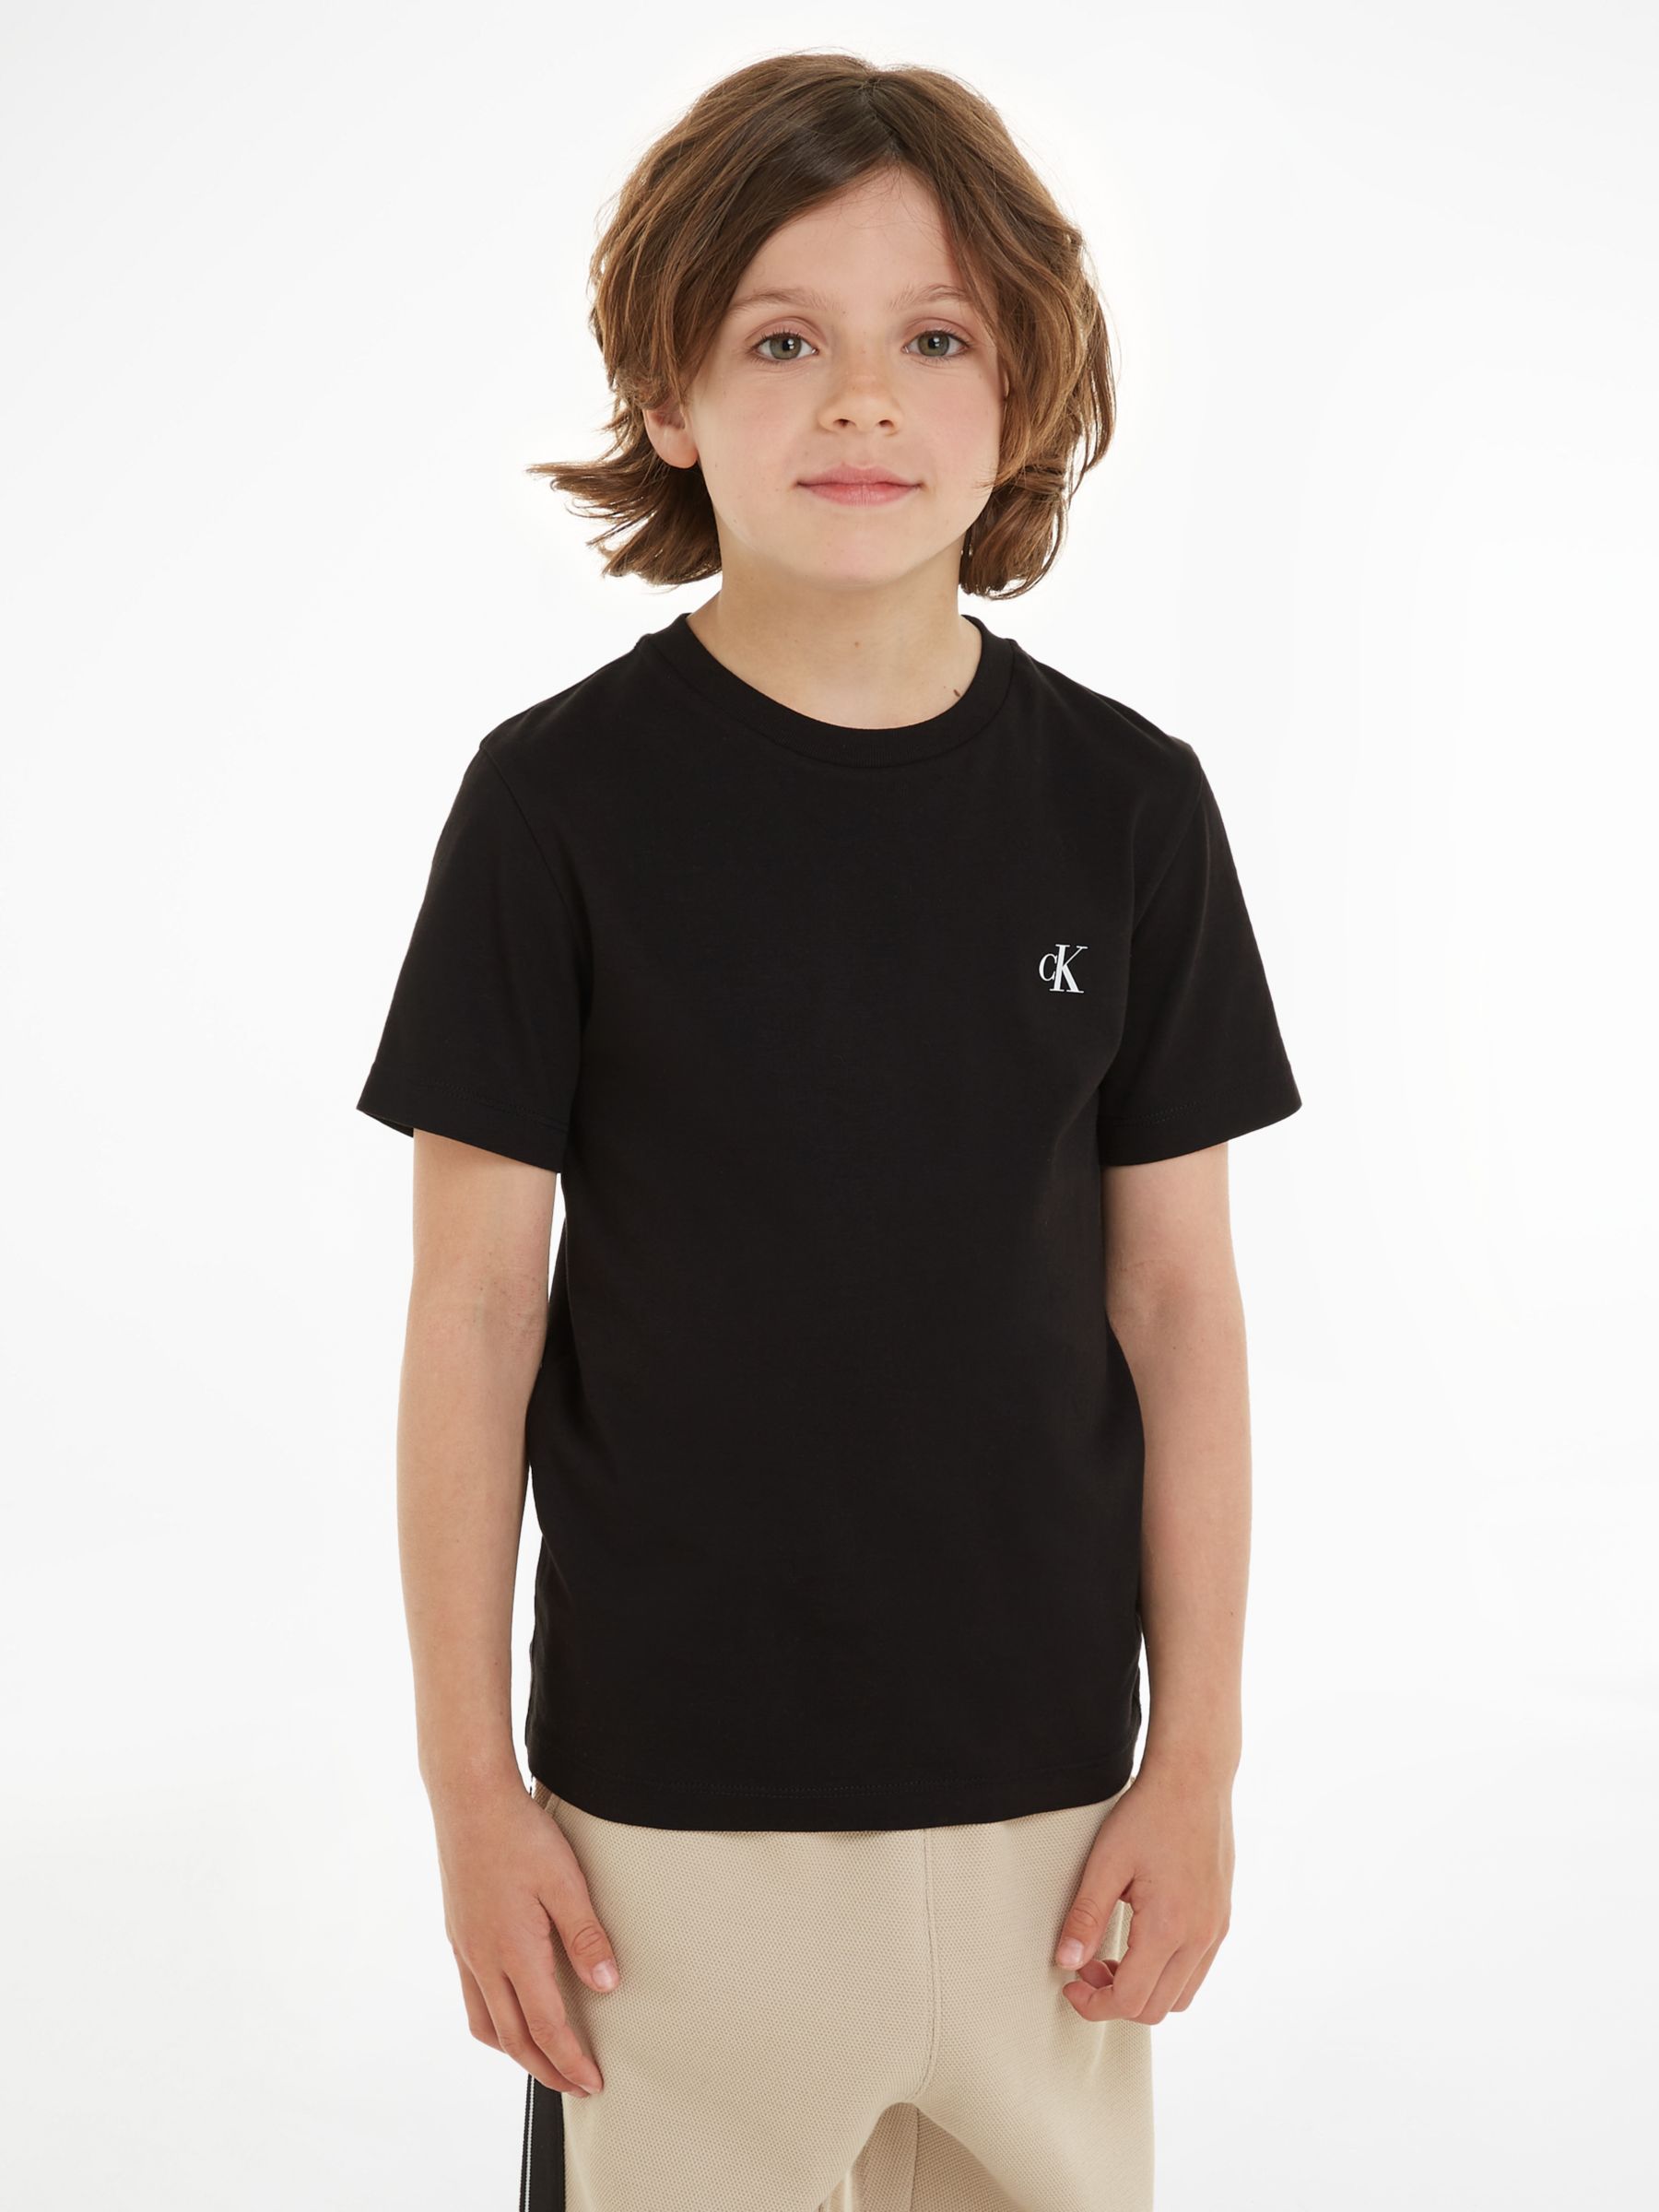 at Black Monogram Keepsake & Klein Calvin Short Sleeve Blue/Ck Partners Lewis Kids\' 2, of T-Shirts, Pack John Cotton